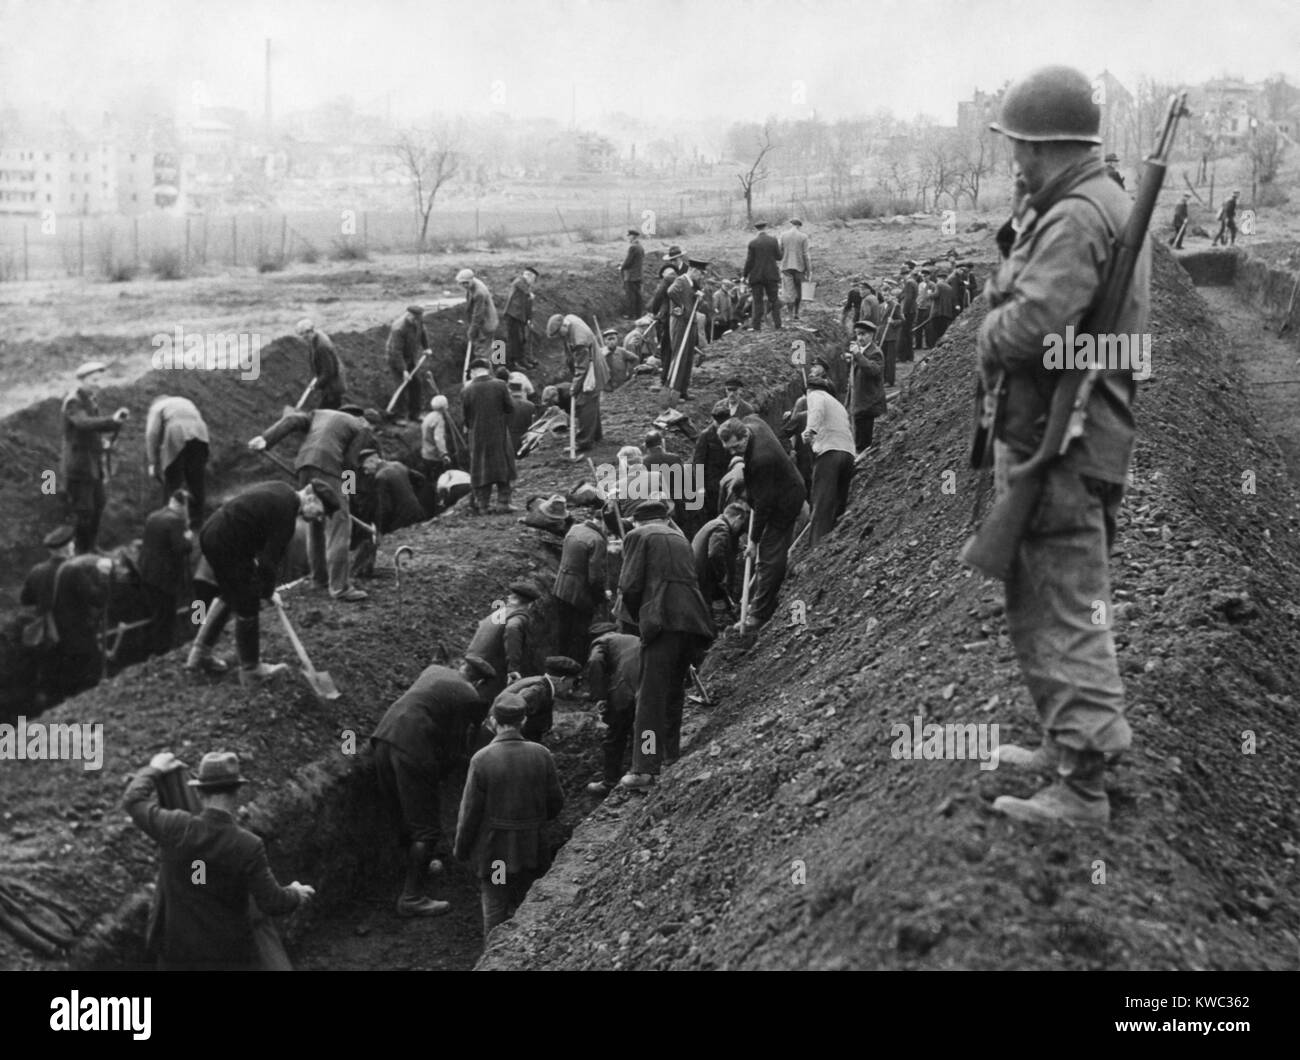 Us-Soldat bewacht das Reburial von KZ-Opfern von deutschen Zivilisten. Ca. April-mai 1945. Unbekannter Standort in Deutschland, Weltkrieg 2 (BSLOC 2015 13 23) Stockfoto